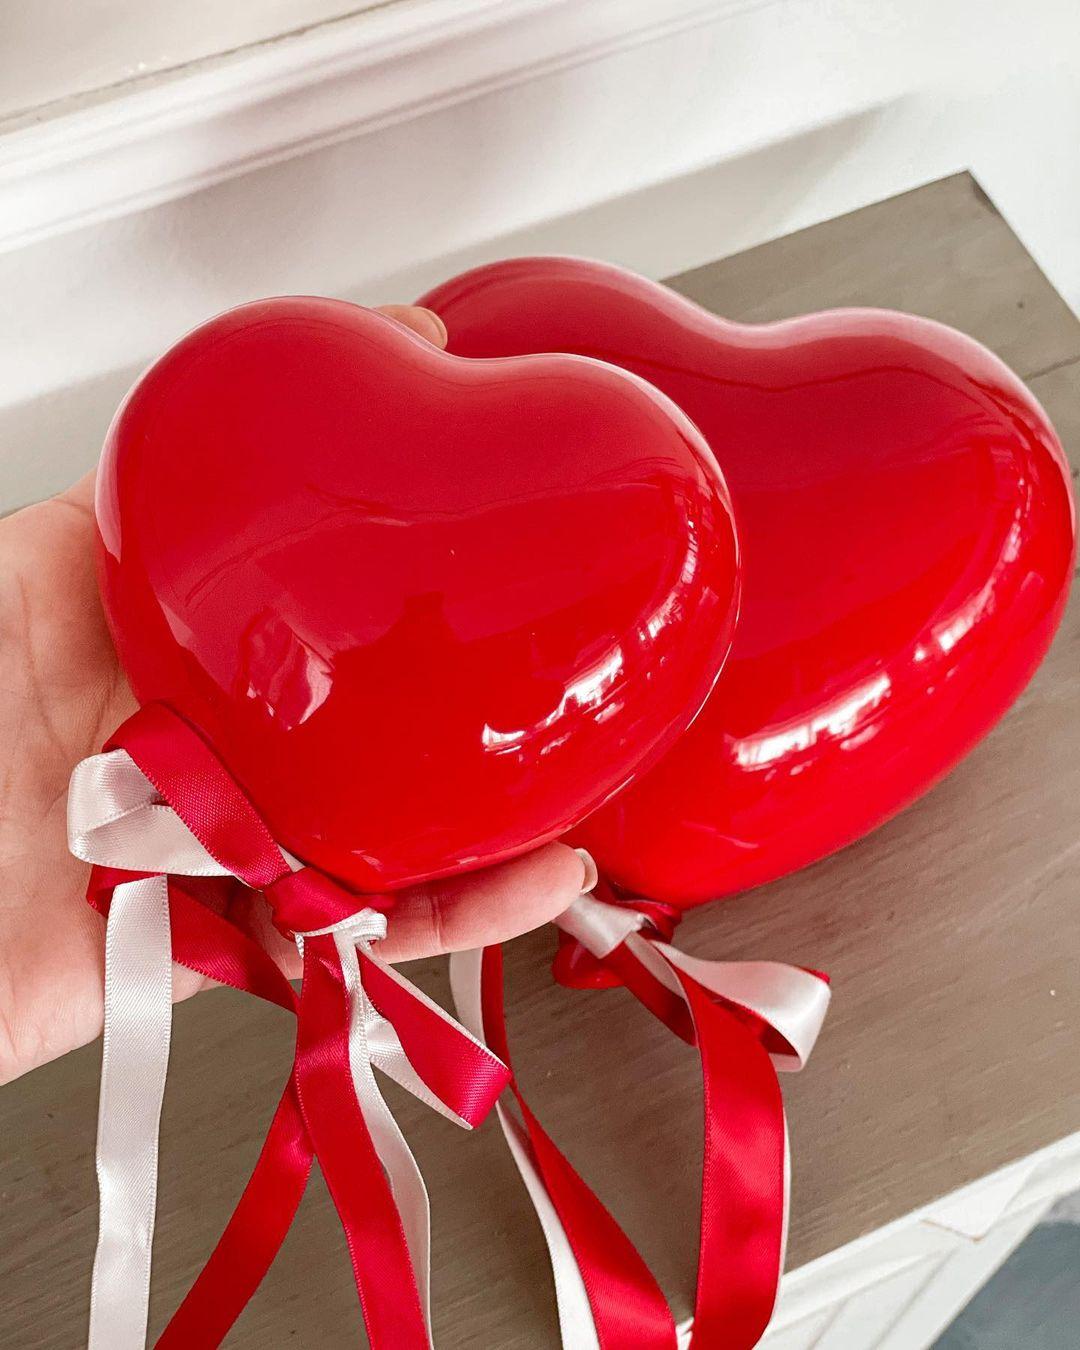 class="content__text"
 Buon San Valentino 🌹

In foto: palloncini in ceramica a forma di cuore, due dimensioni, due colori.

Scopri tutto su 👉🏼 www.homearredocasa.it 
 